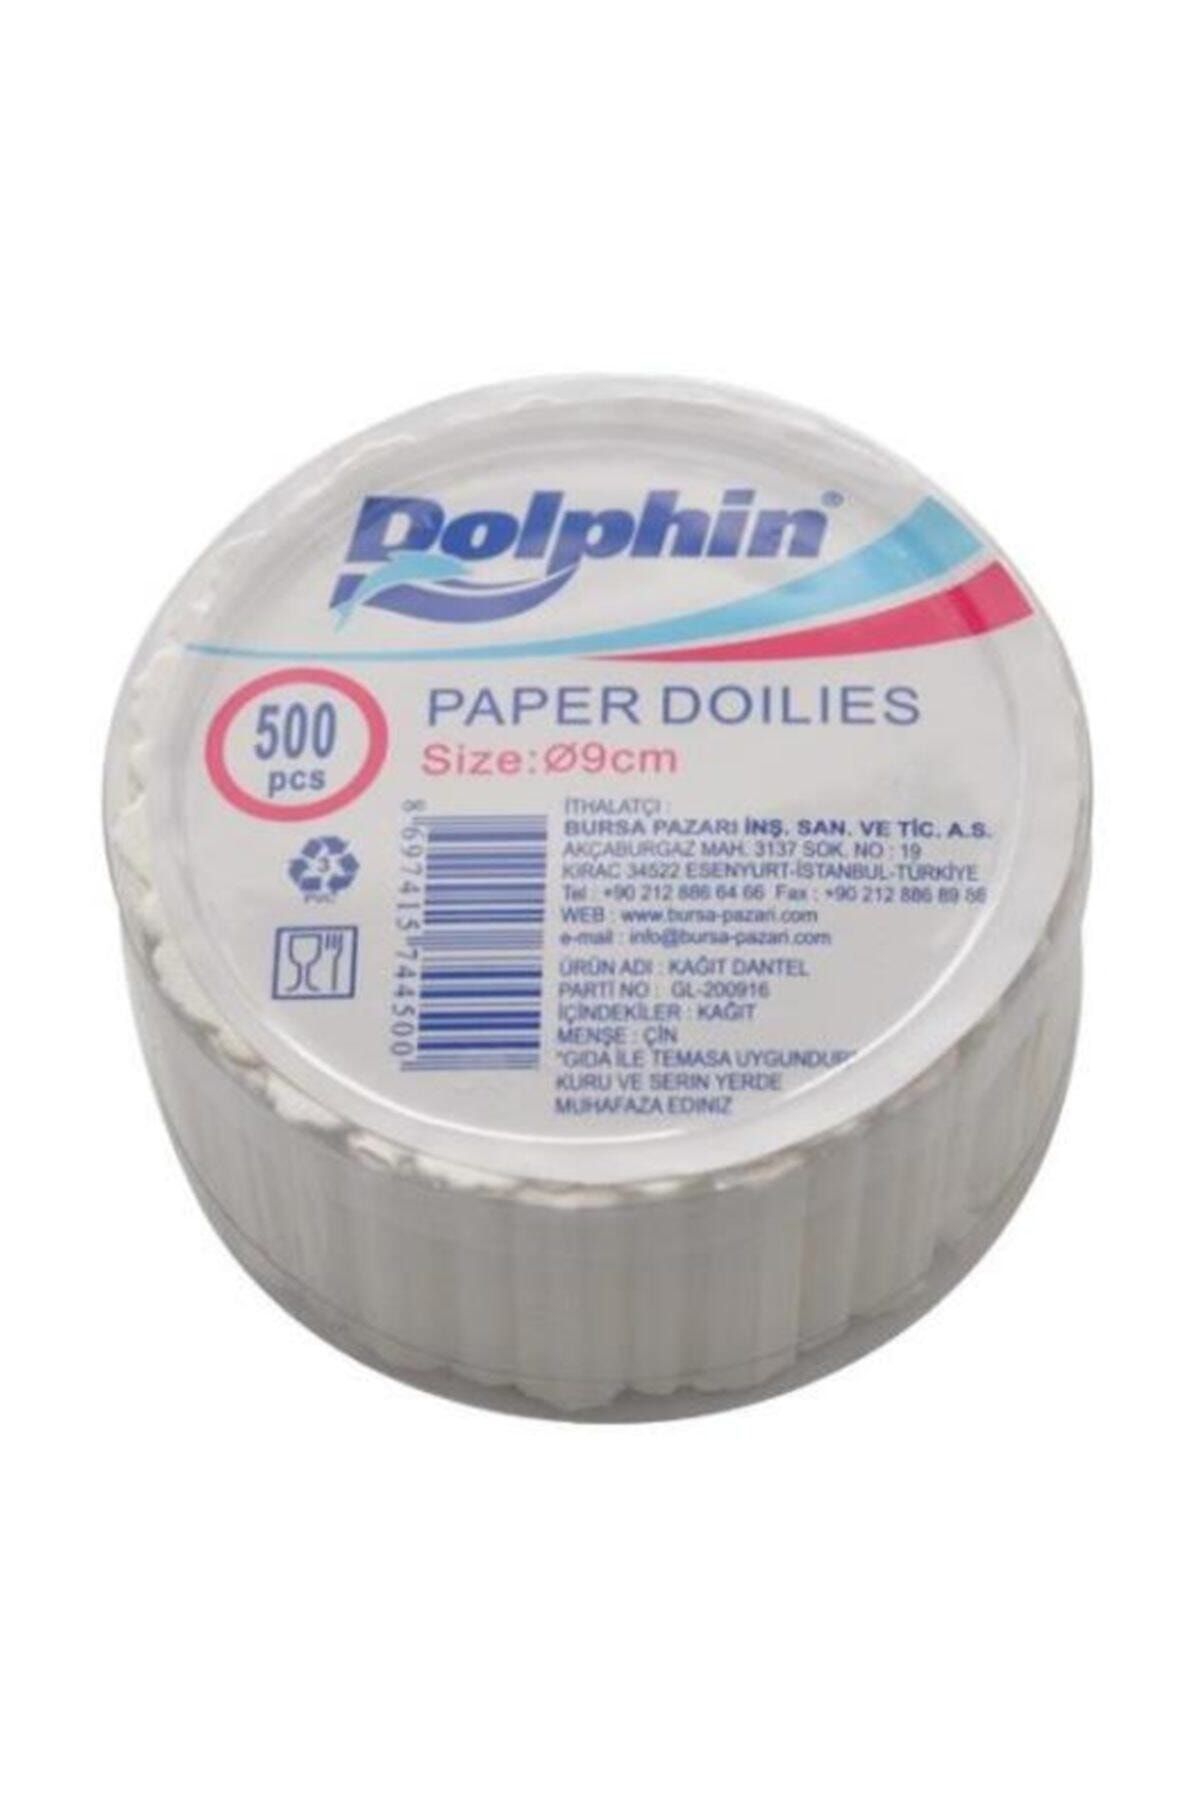 Dolphin Dantel Kağıt 9 Cm 500 Adet